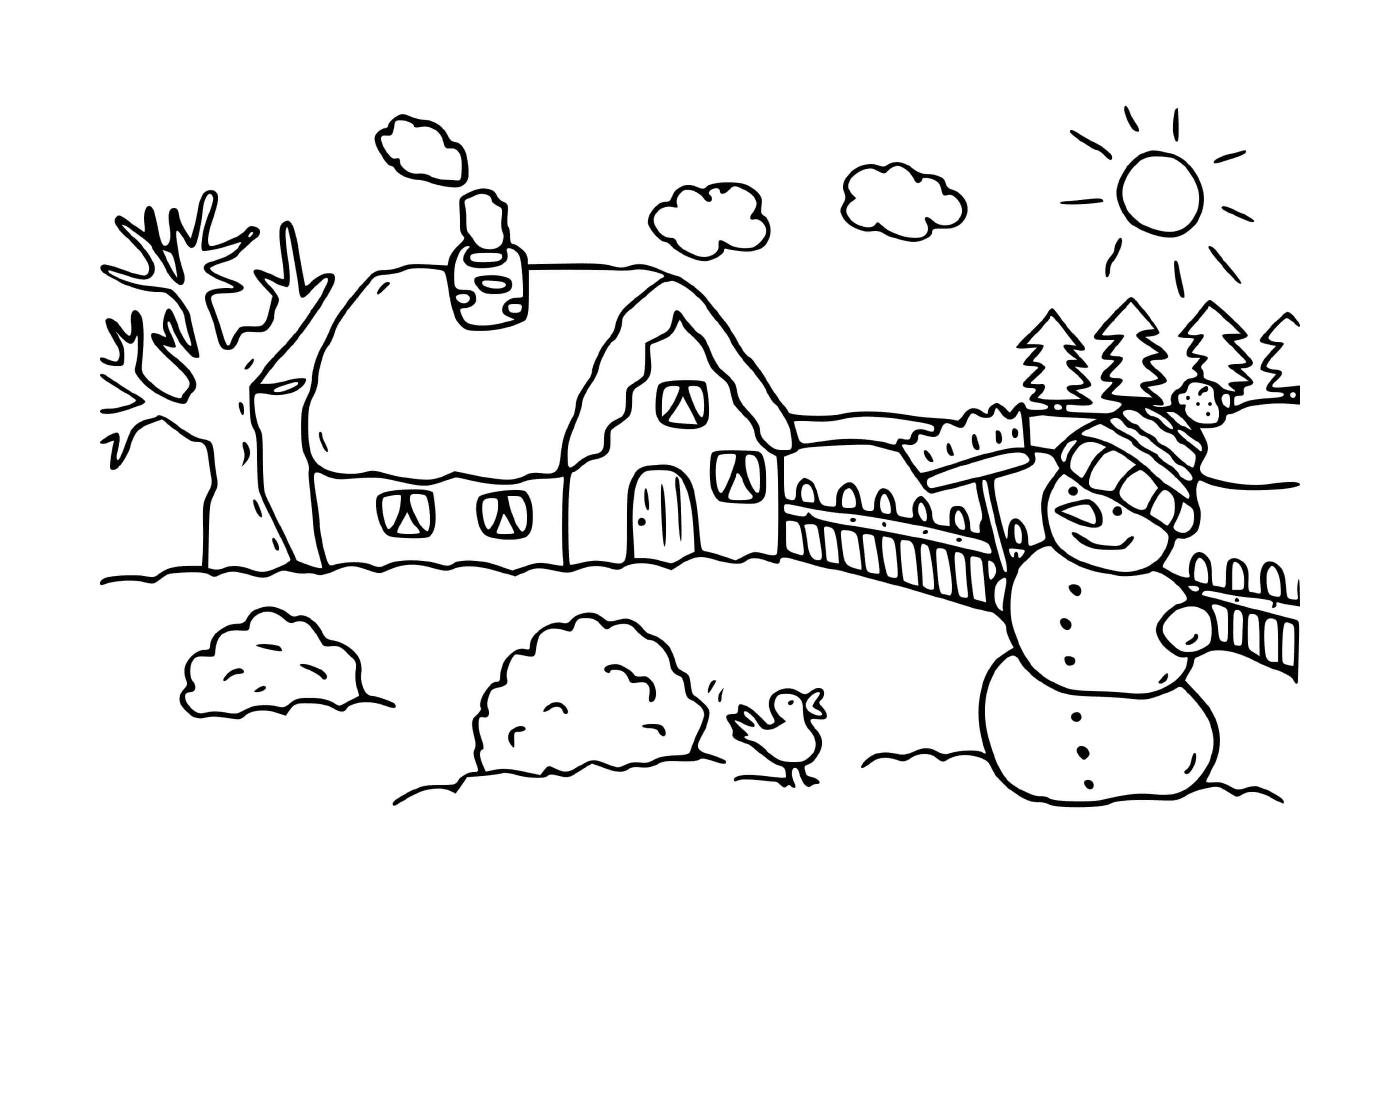  बरफी सर्दियों का घर 